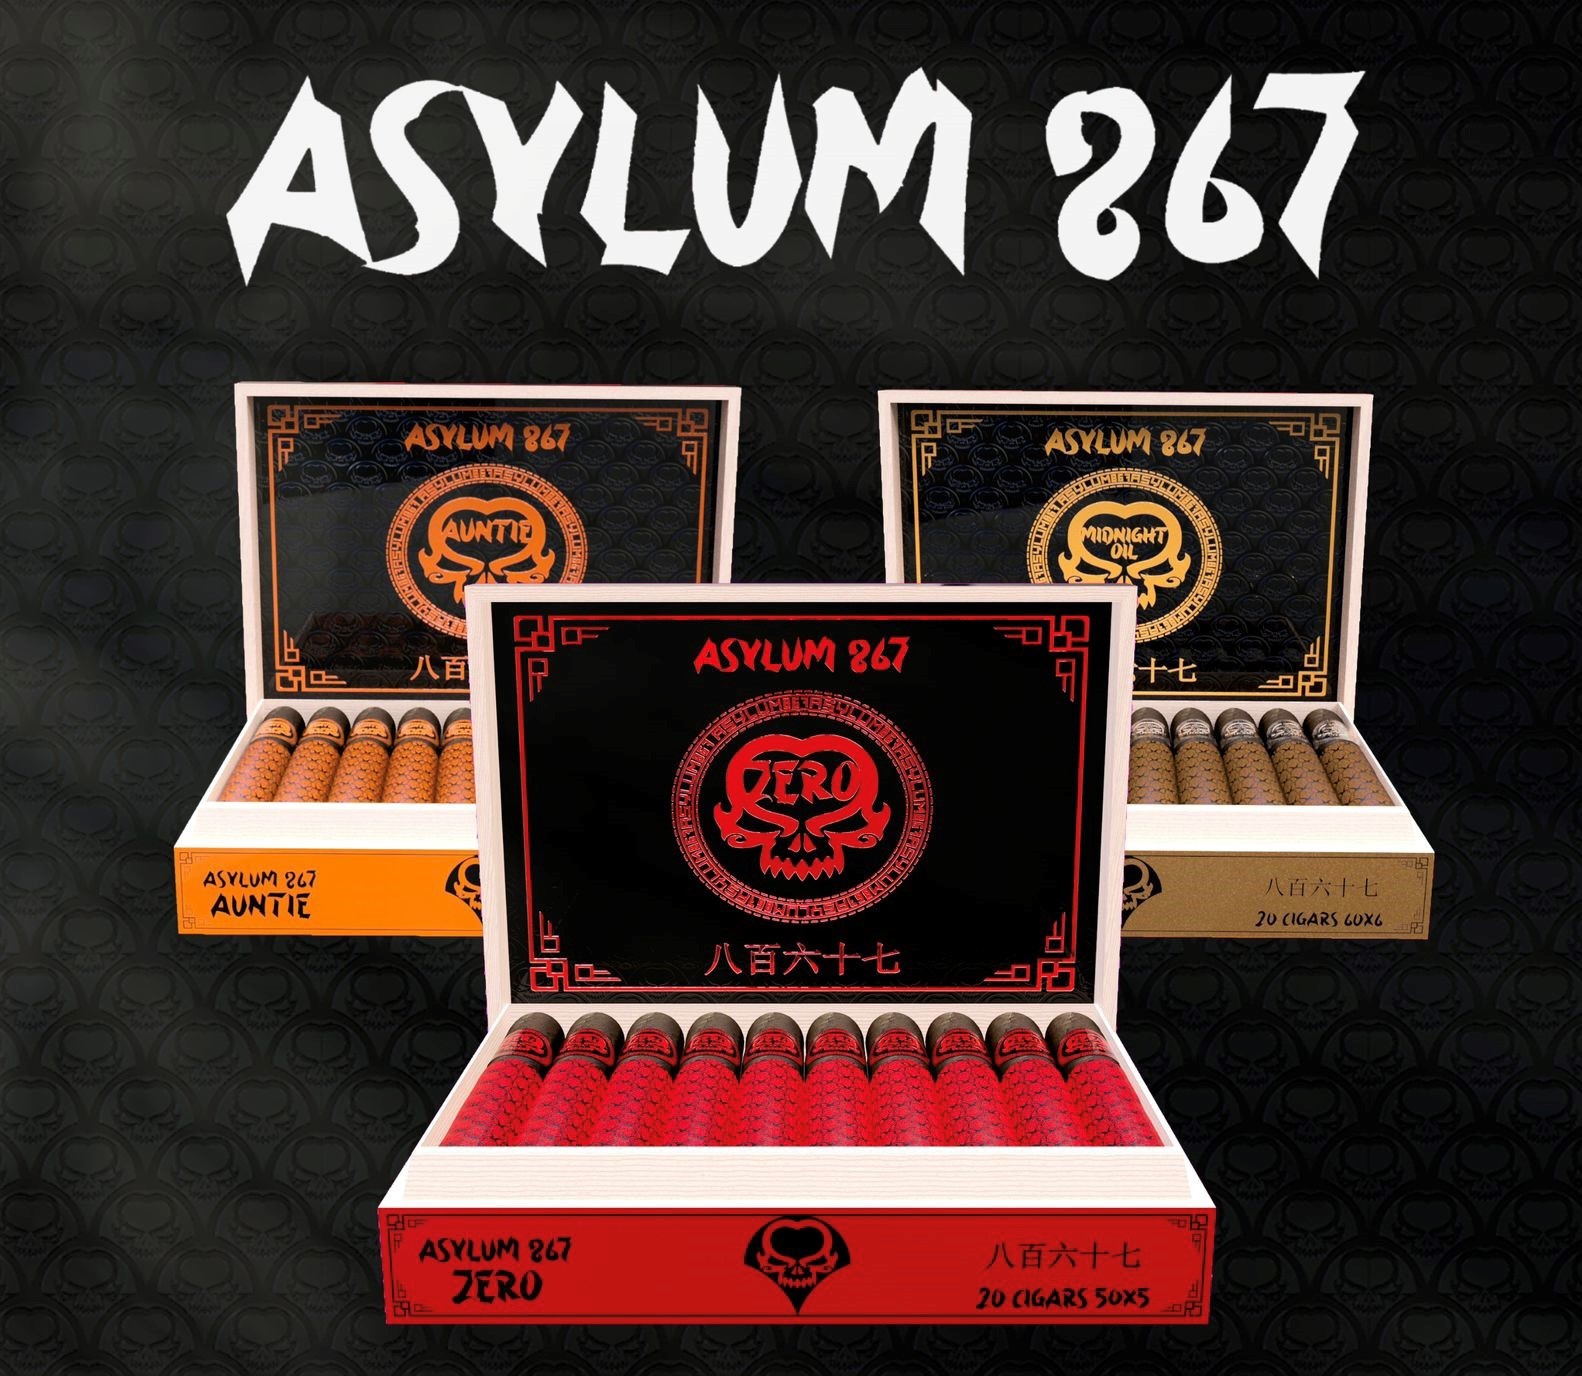 C.L.E. Asylum 867 boxes of cigars